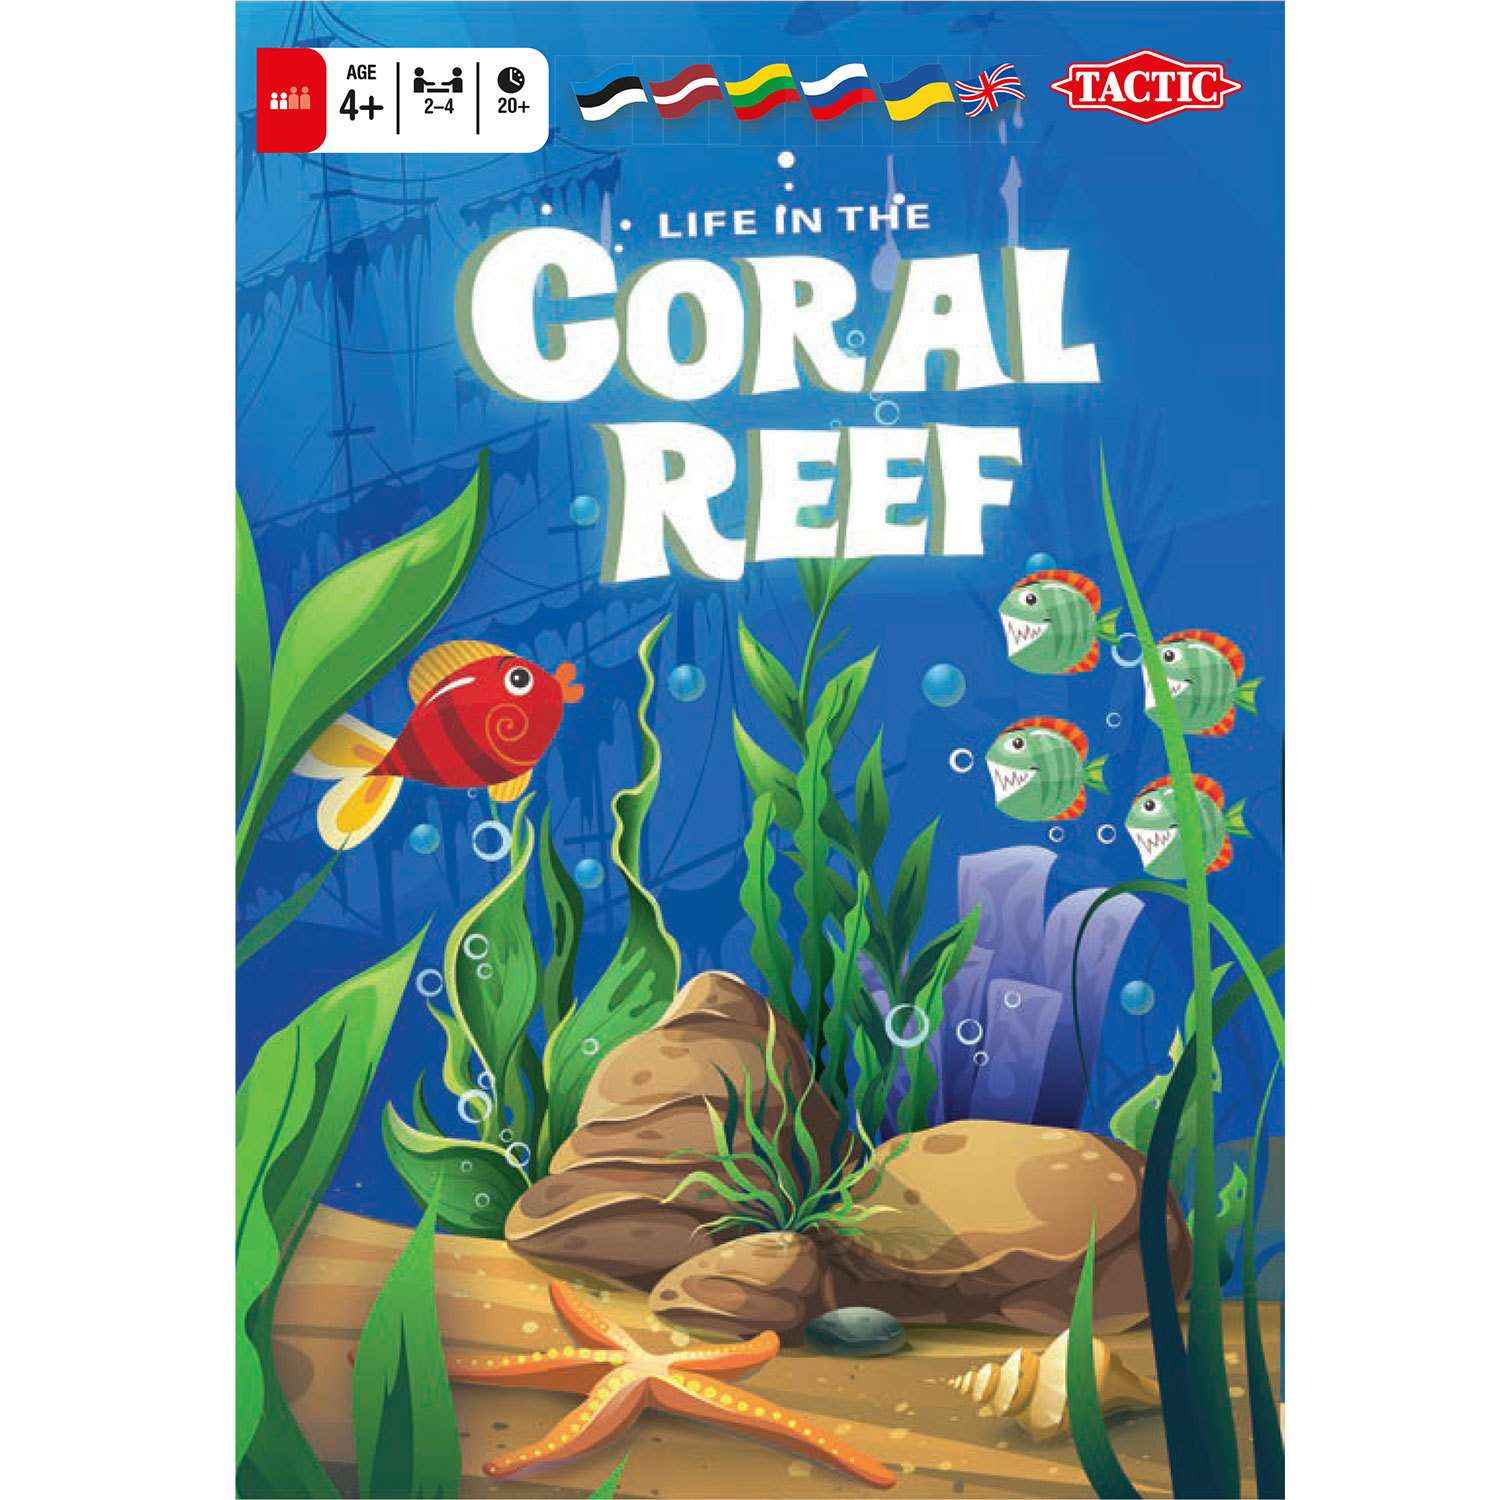 Coral игра. Tactic / коралловый риф 54546. Коралловый риф игра. Игра коралловый риф Tactic. Коралловый риф настольная игра.